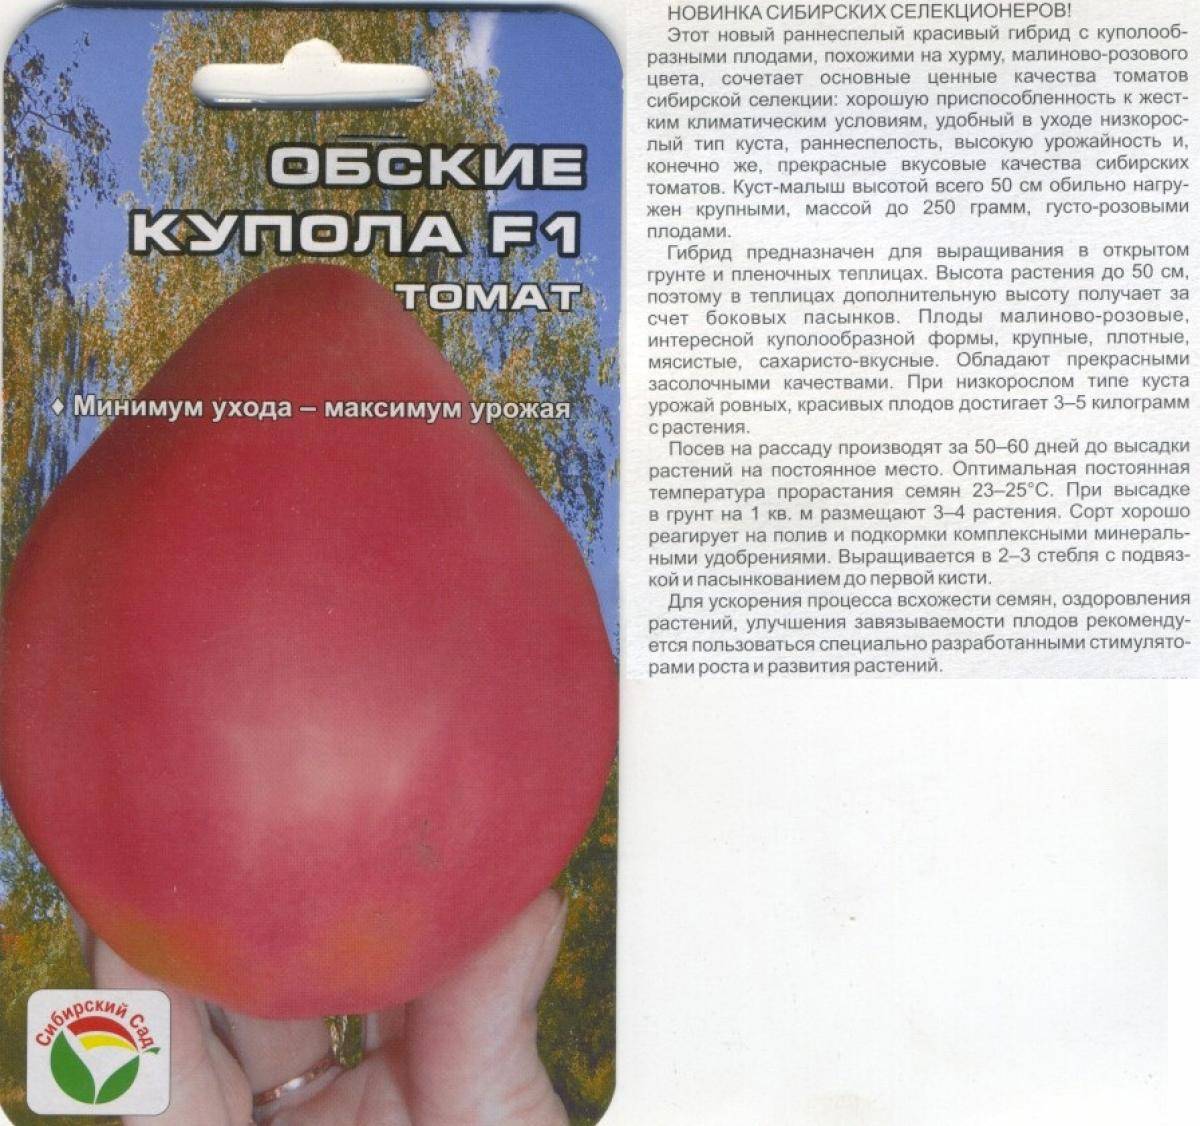 Описание сорта томата Русские купола и особенности выращивания